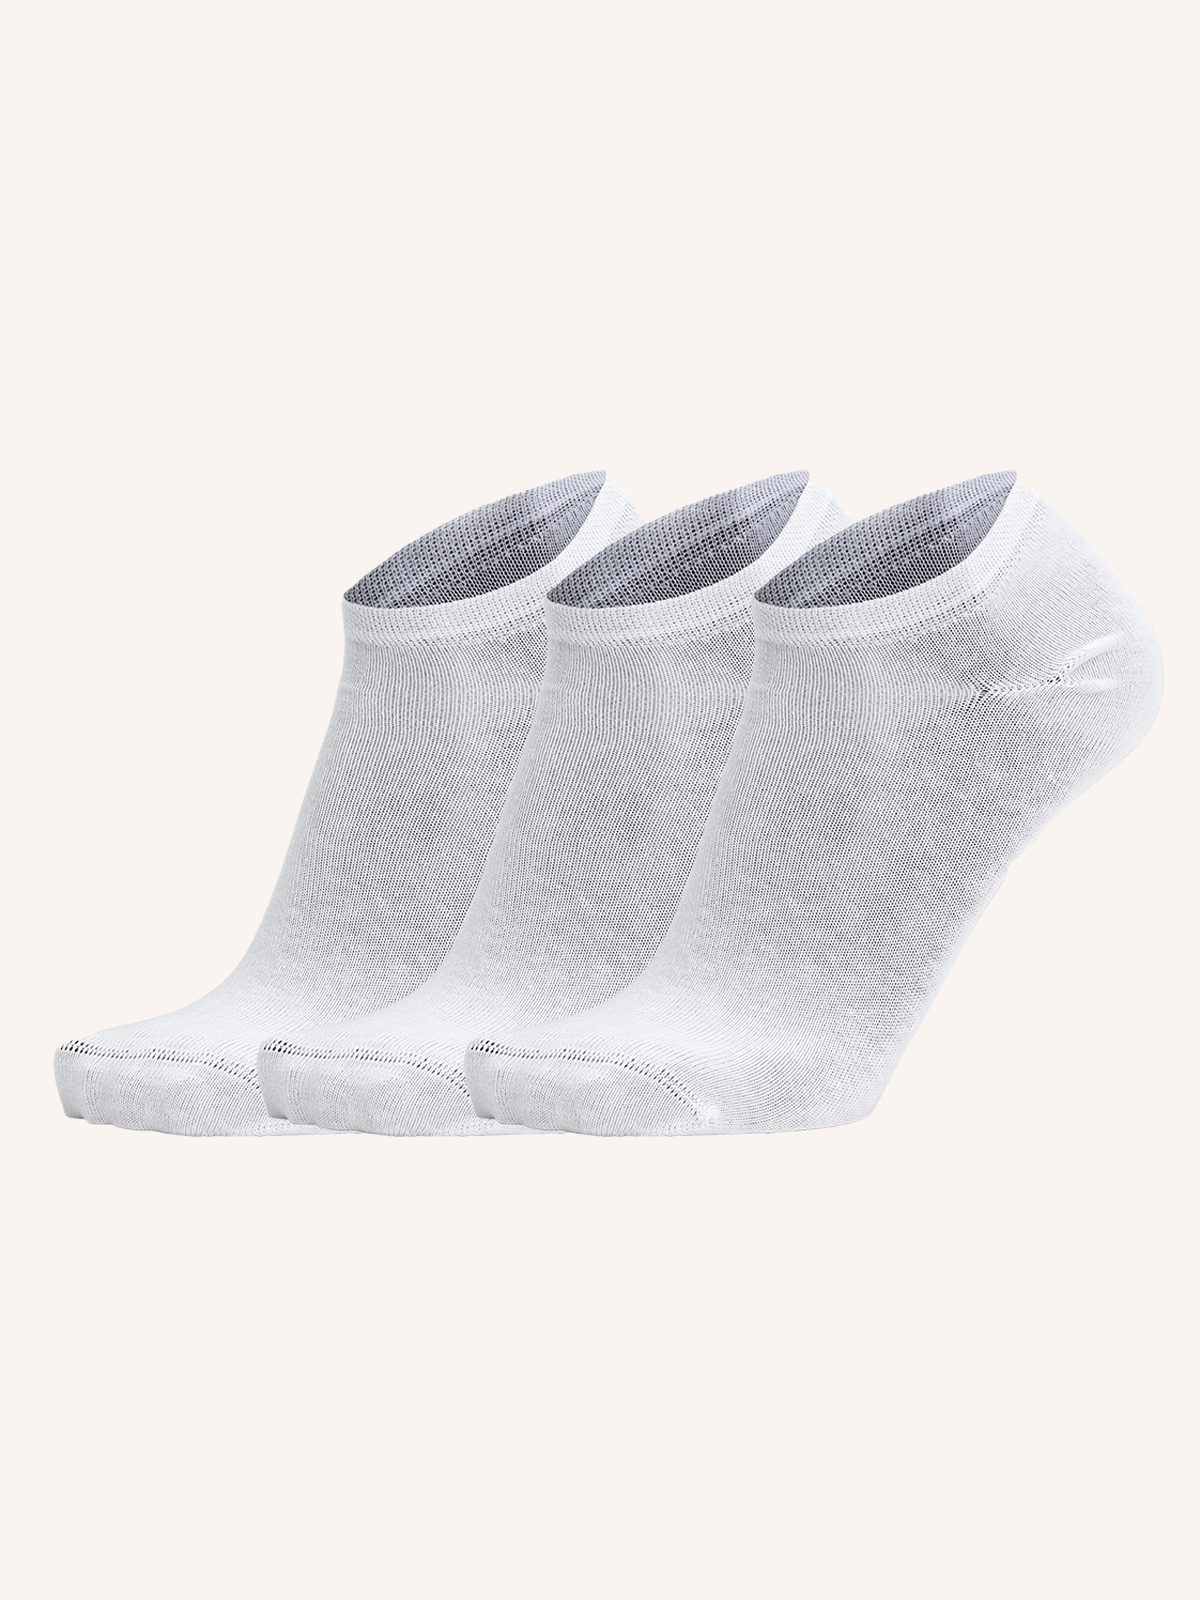 Pariscarpa Cotton Sock for Women | Plain Color | Pack of 3 Pairs | PRS 08D